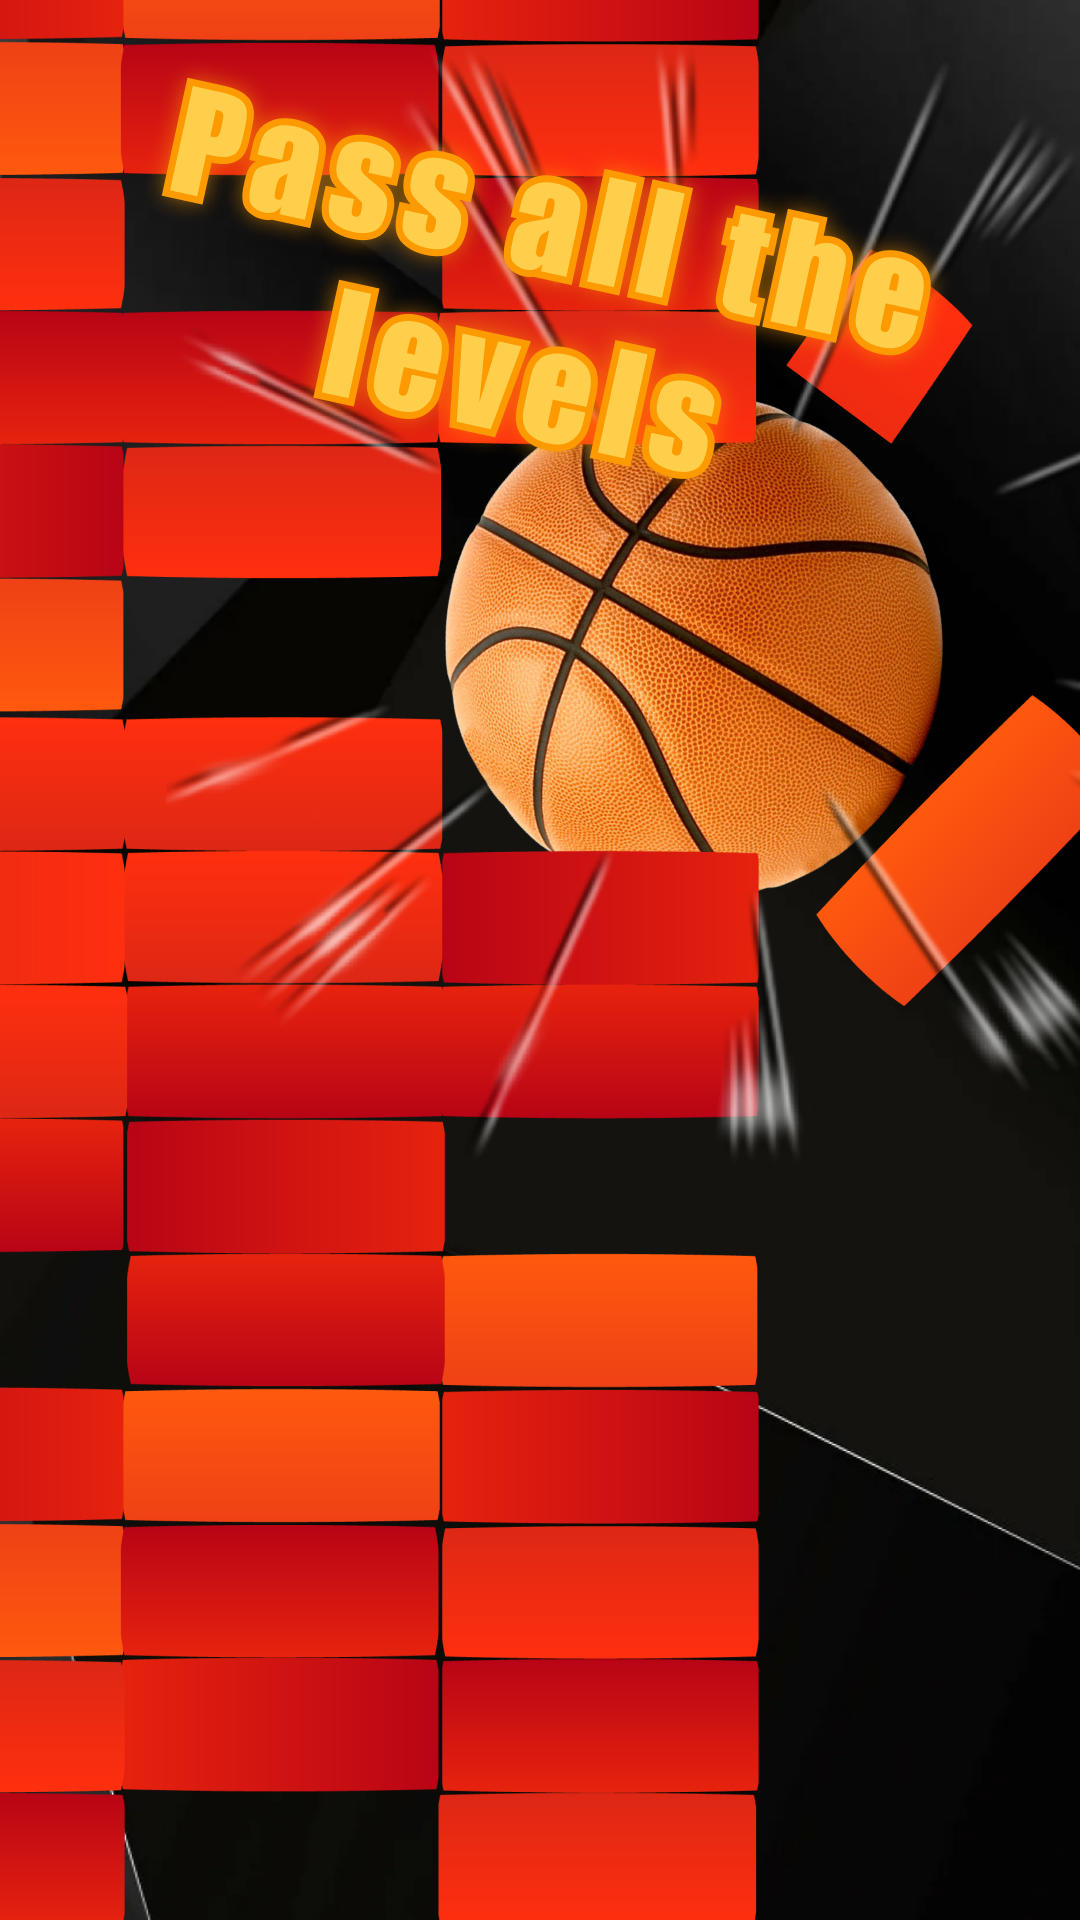 Futemax Apanhador Desportivo versão móvel andróide iOS apk baixar  gratuitamente-TapTap